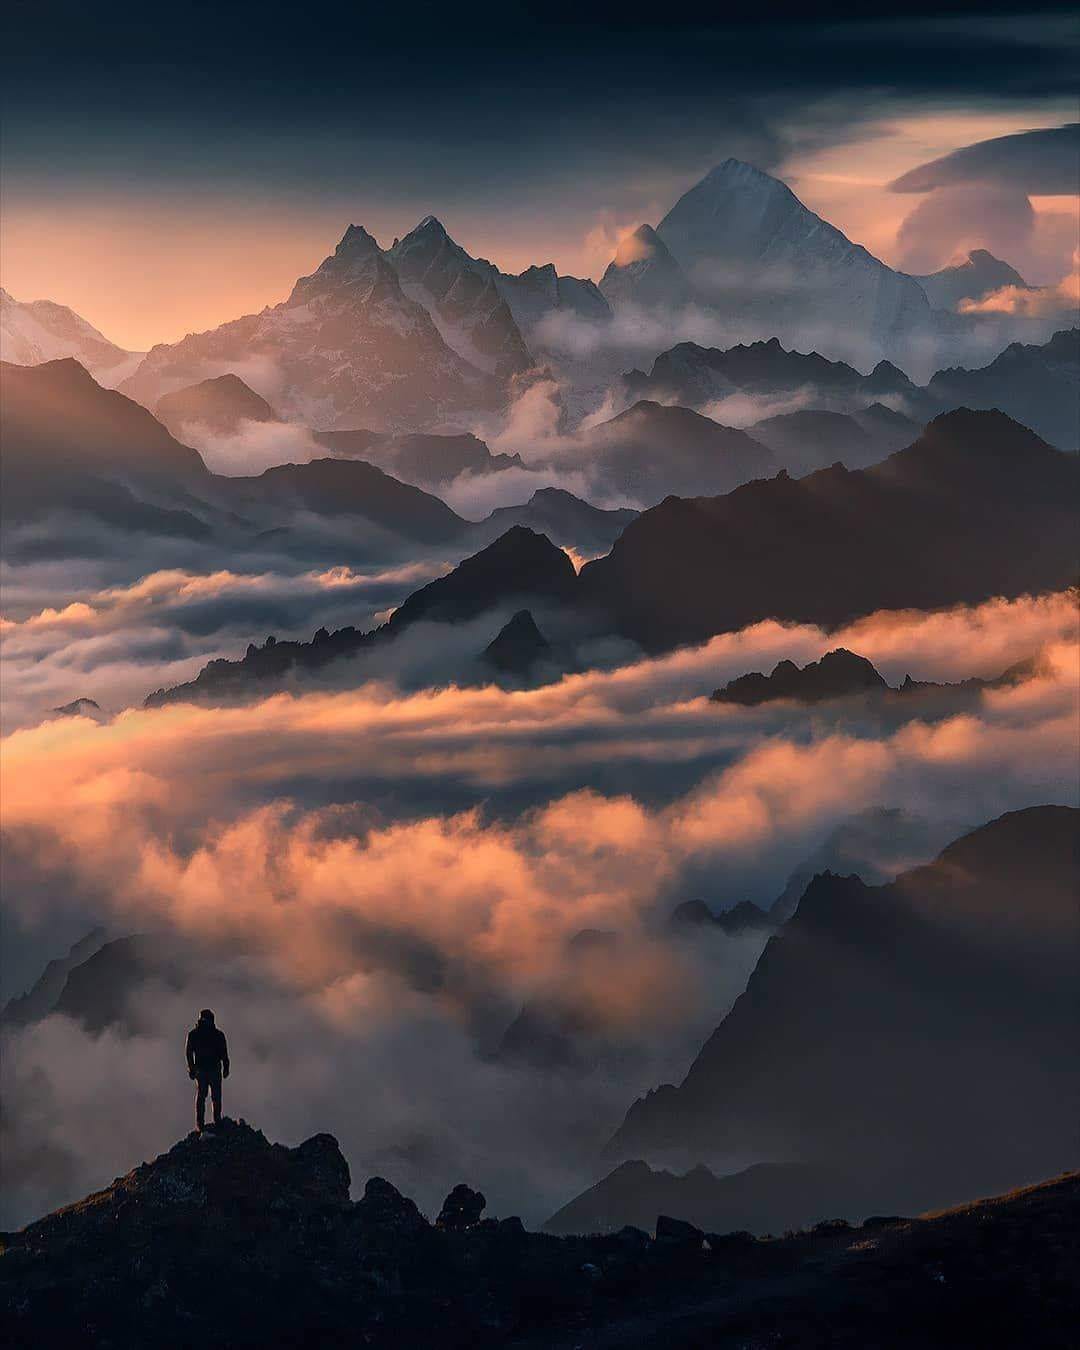 Himalayas of Nepal with a view towards Makalu 